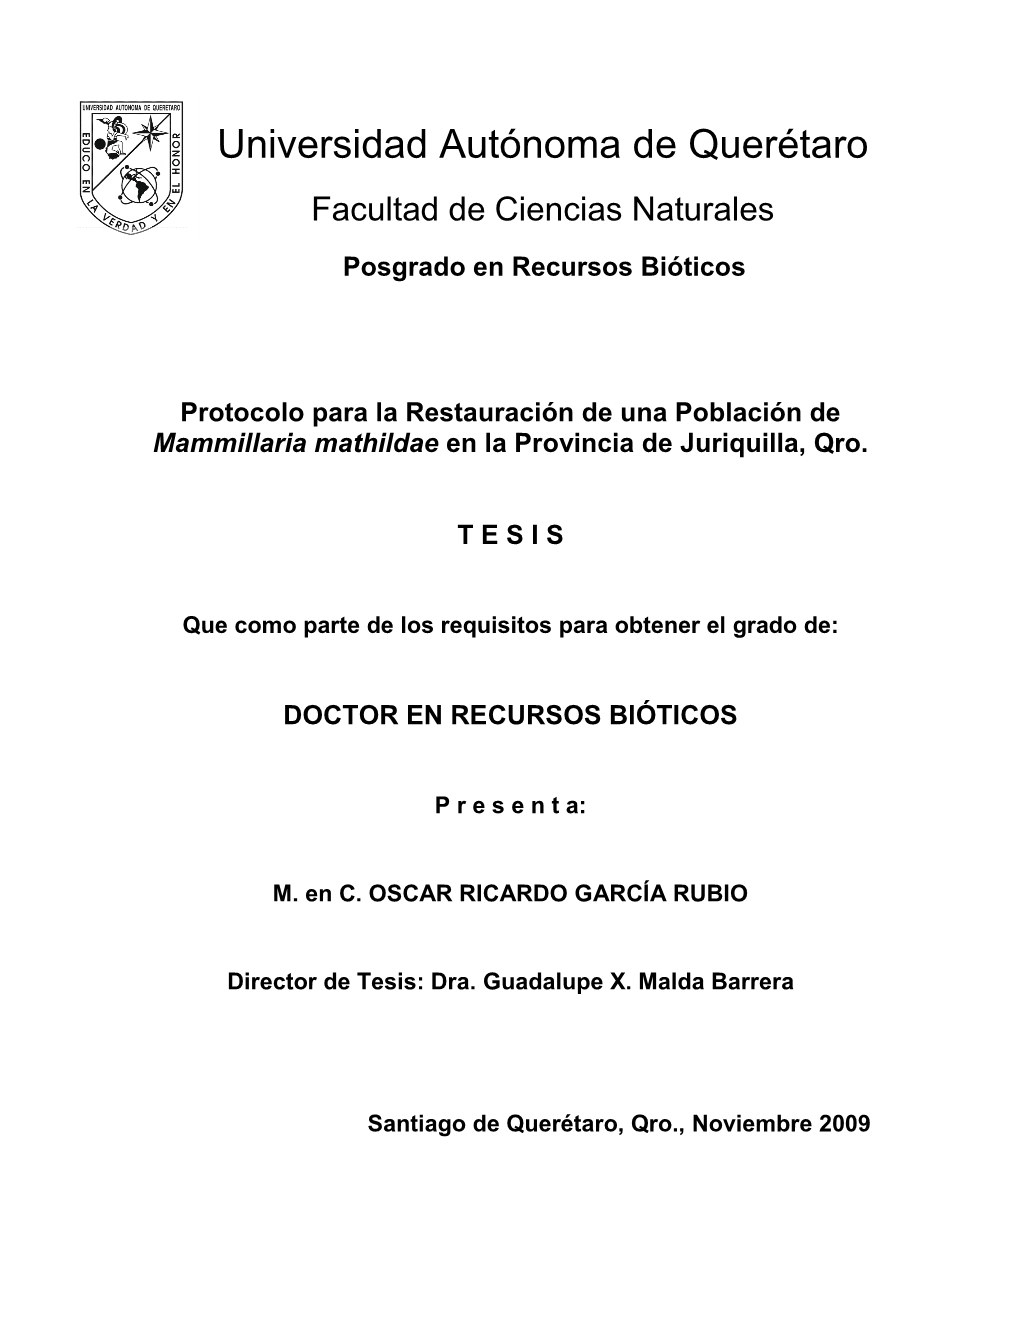 Protocolo Para La Restauración De Una Población De Mammillaria Mathildae En La Provincia De Juriquilla, Qro